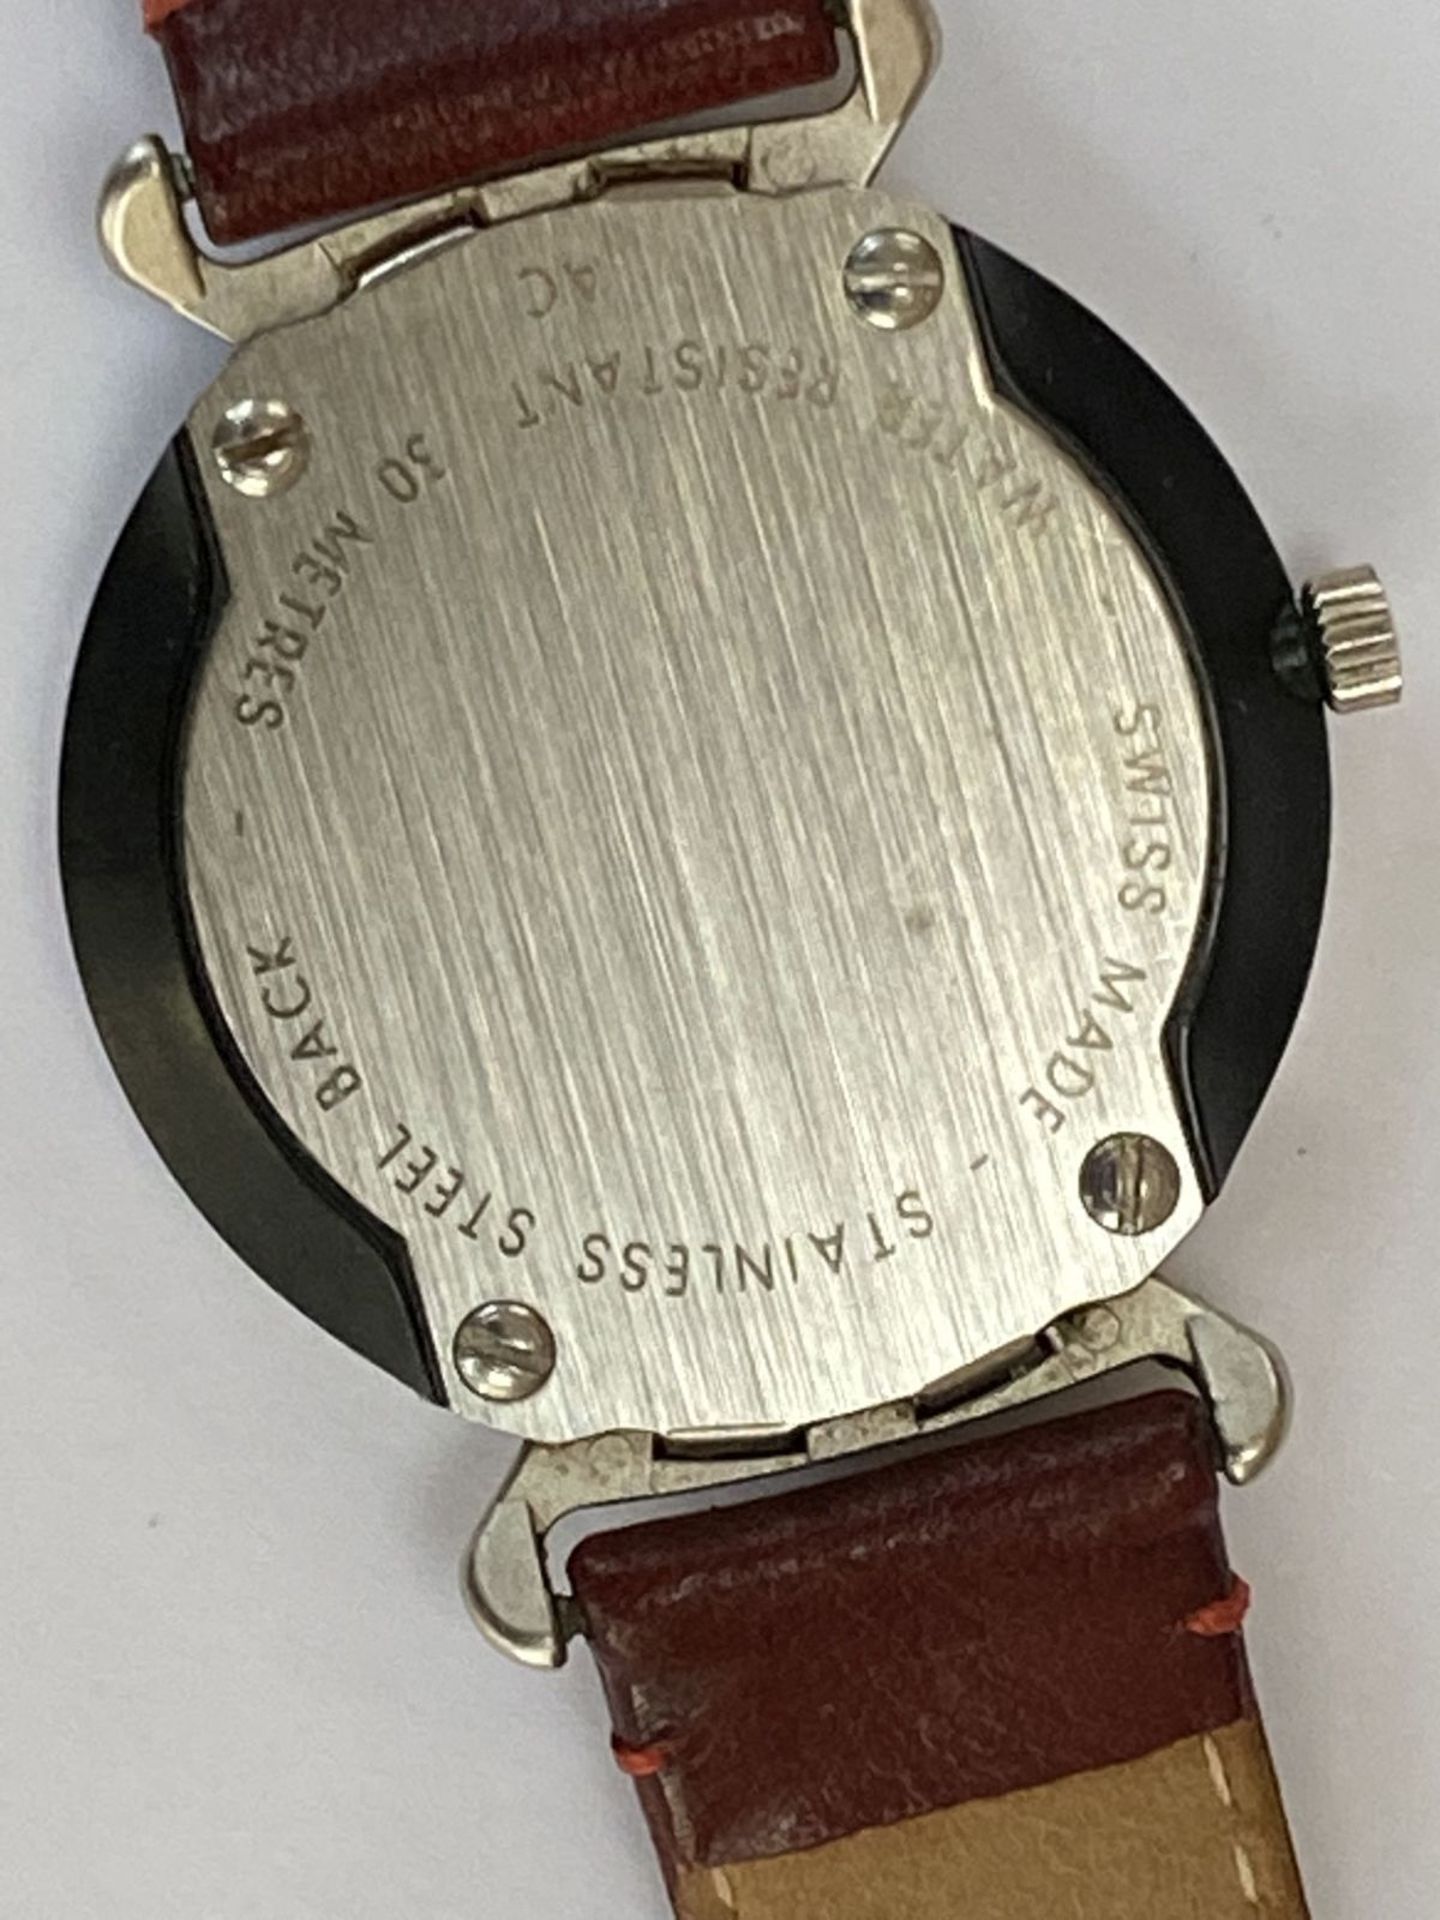 Schweizer Armbanduhr, Quarz, kein Hersteller?, nur Schweizer Kreuz, Werk läuft, gut erhalten, - Image 5 of 5